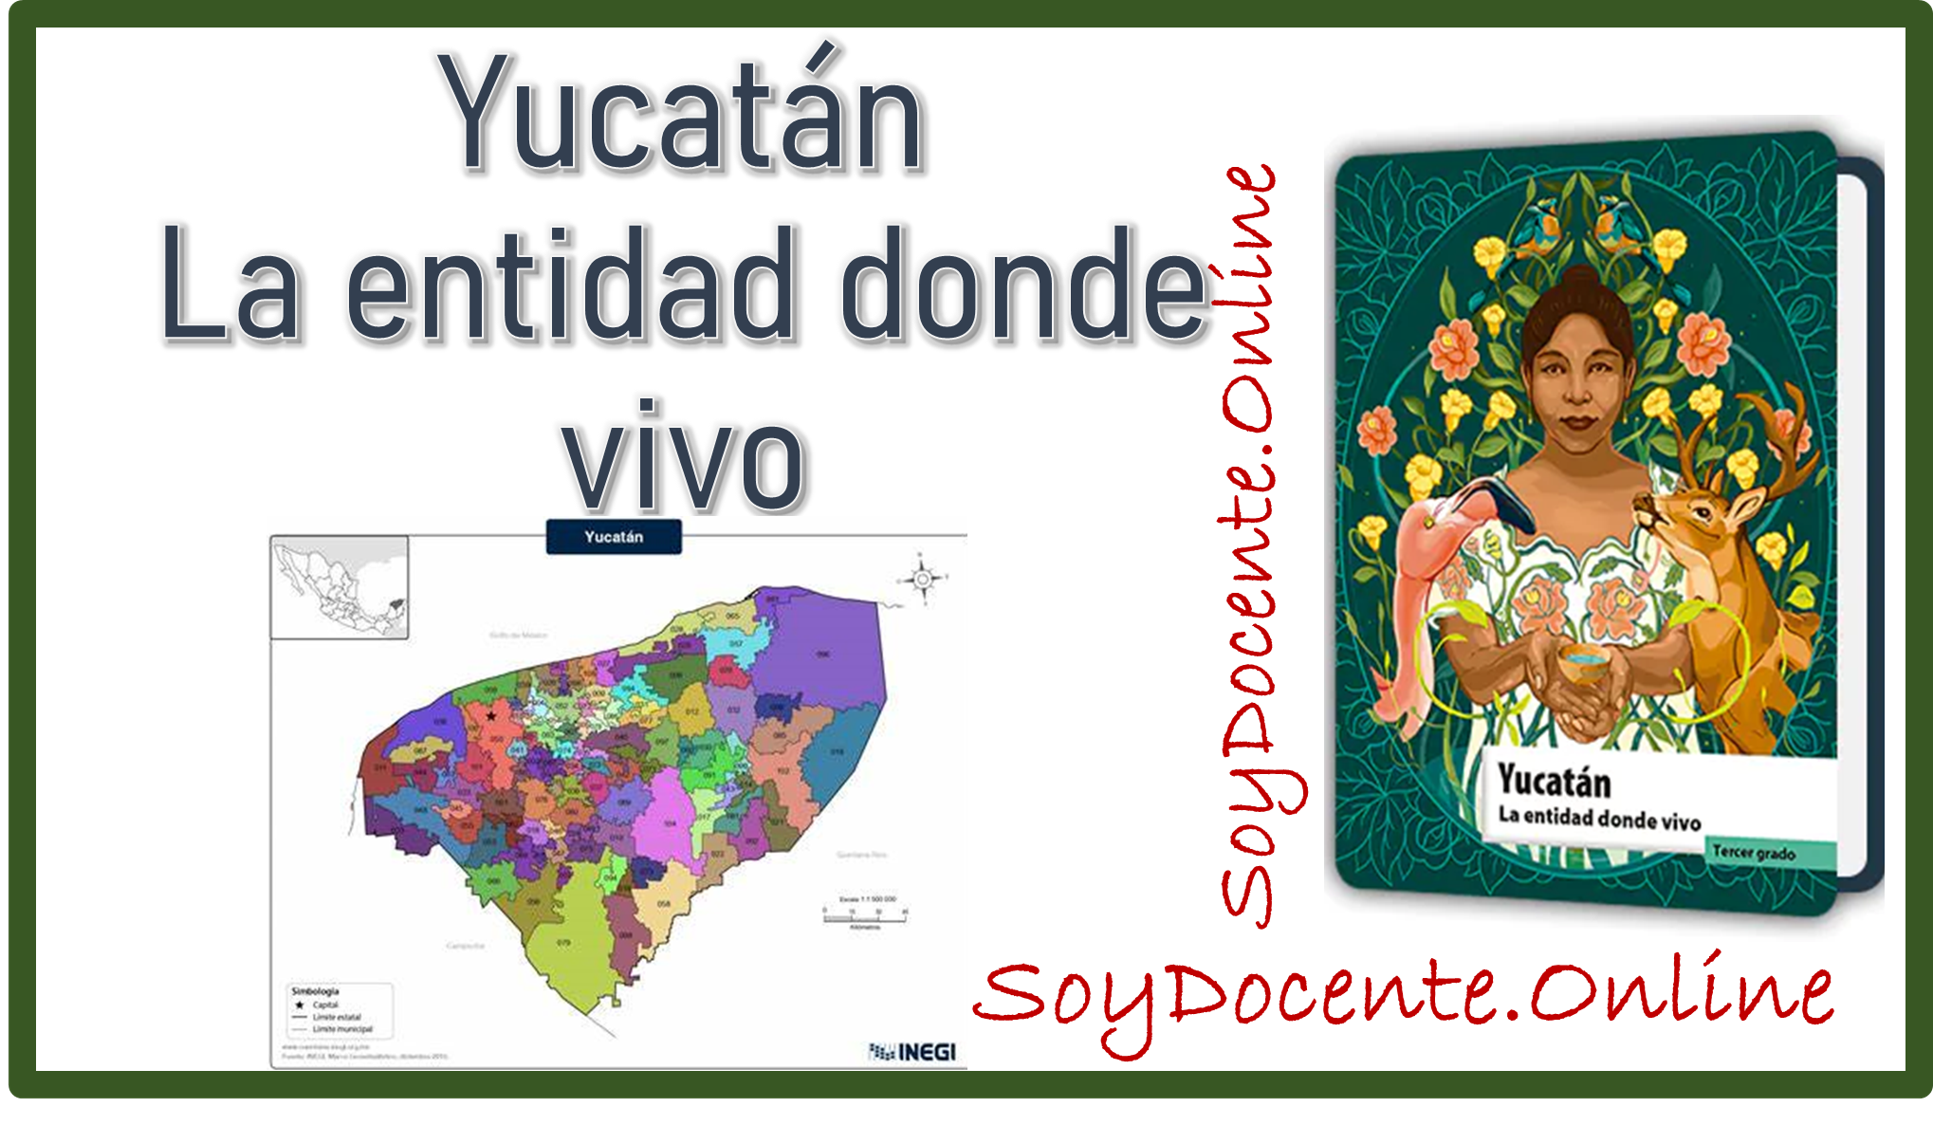 Libro de Yucatán La entidad donde vivo tercer grado de Primaria, planificado por la SEP, distribuido por la CONALITEG.